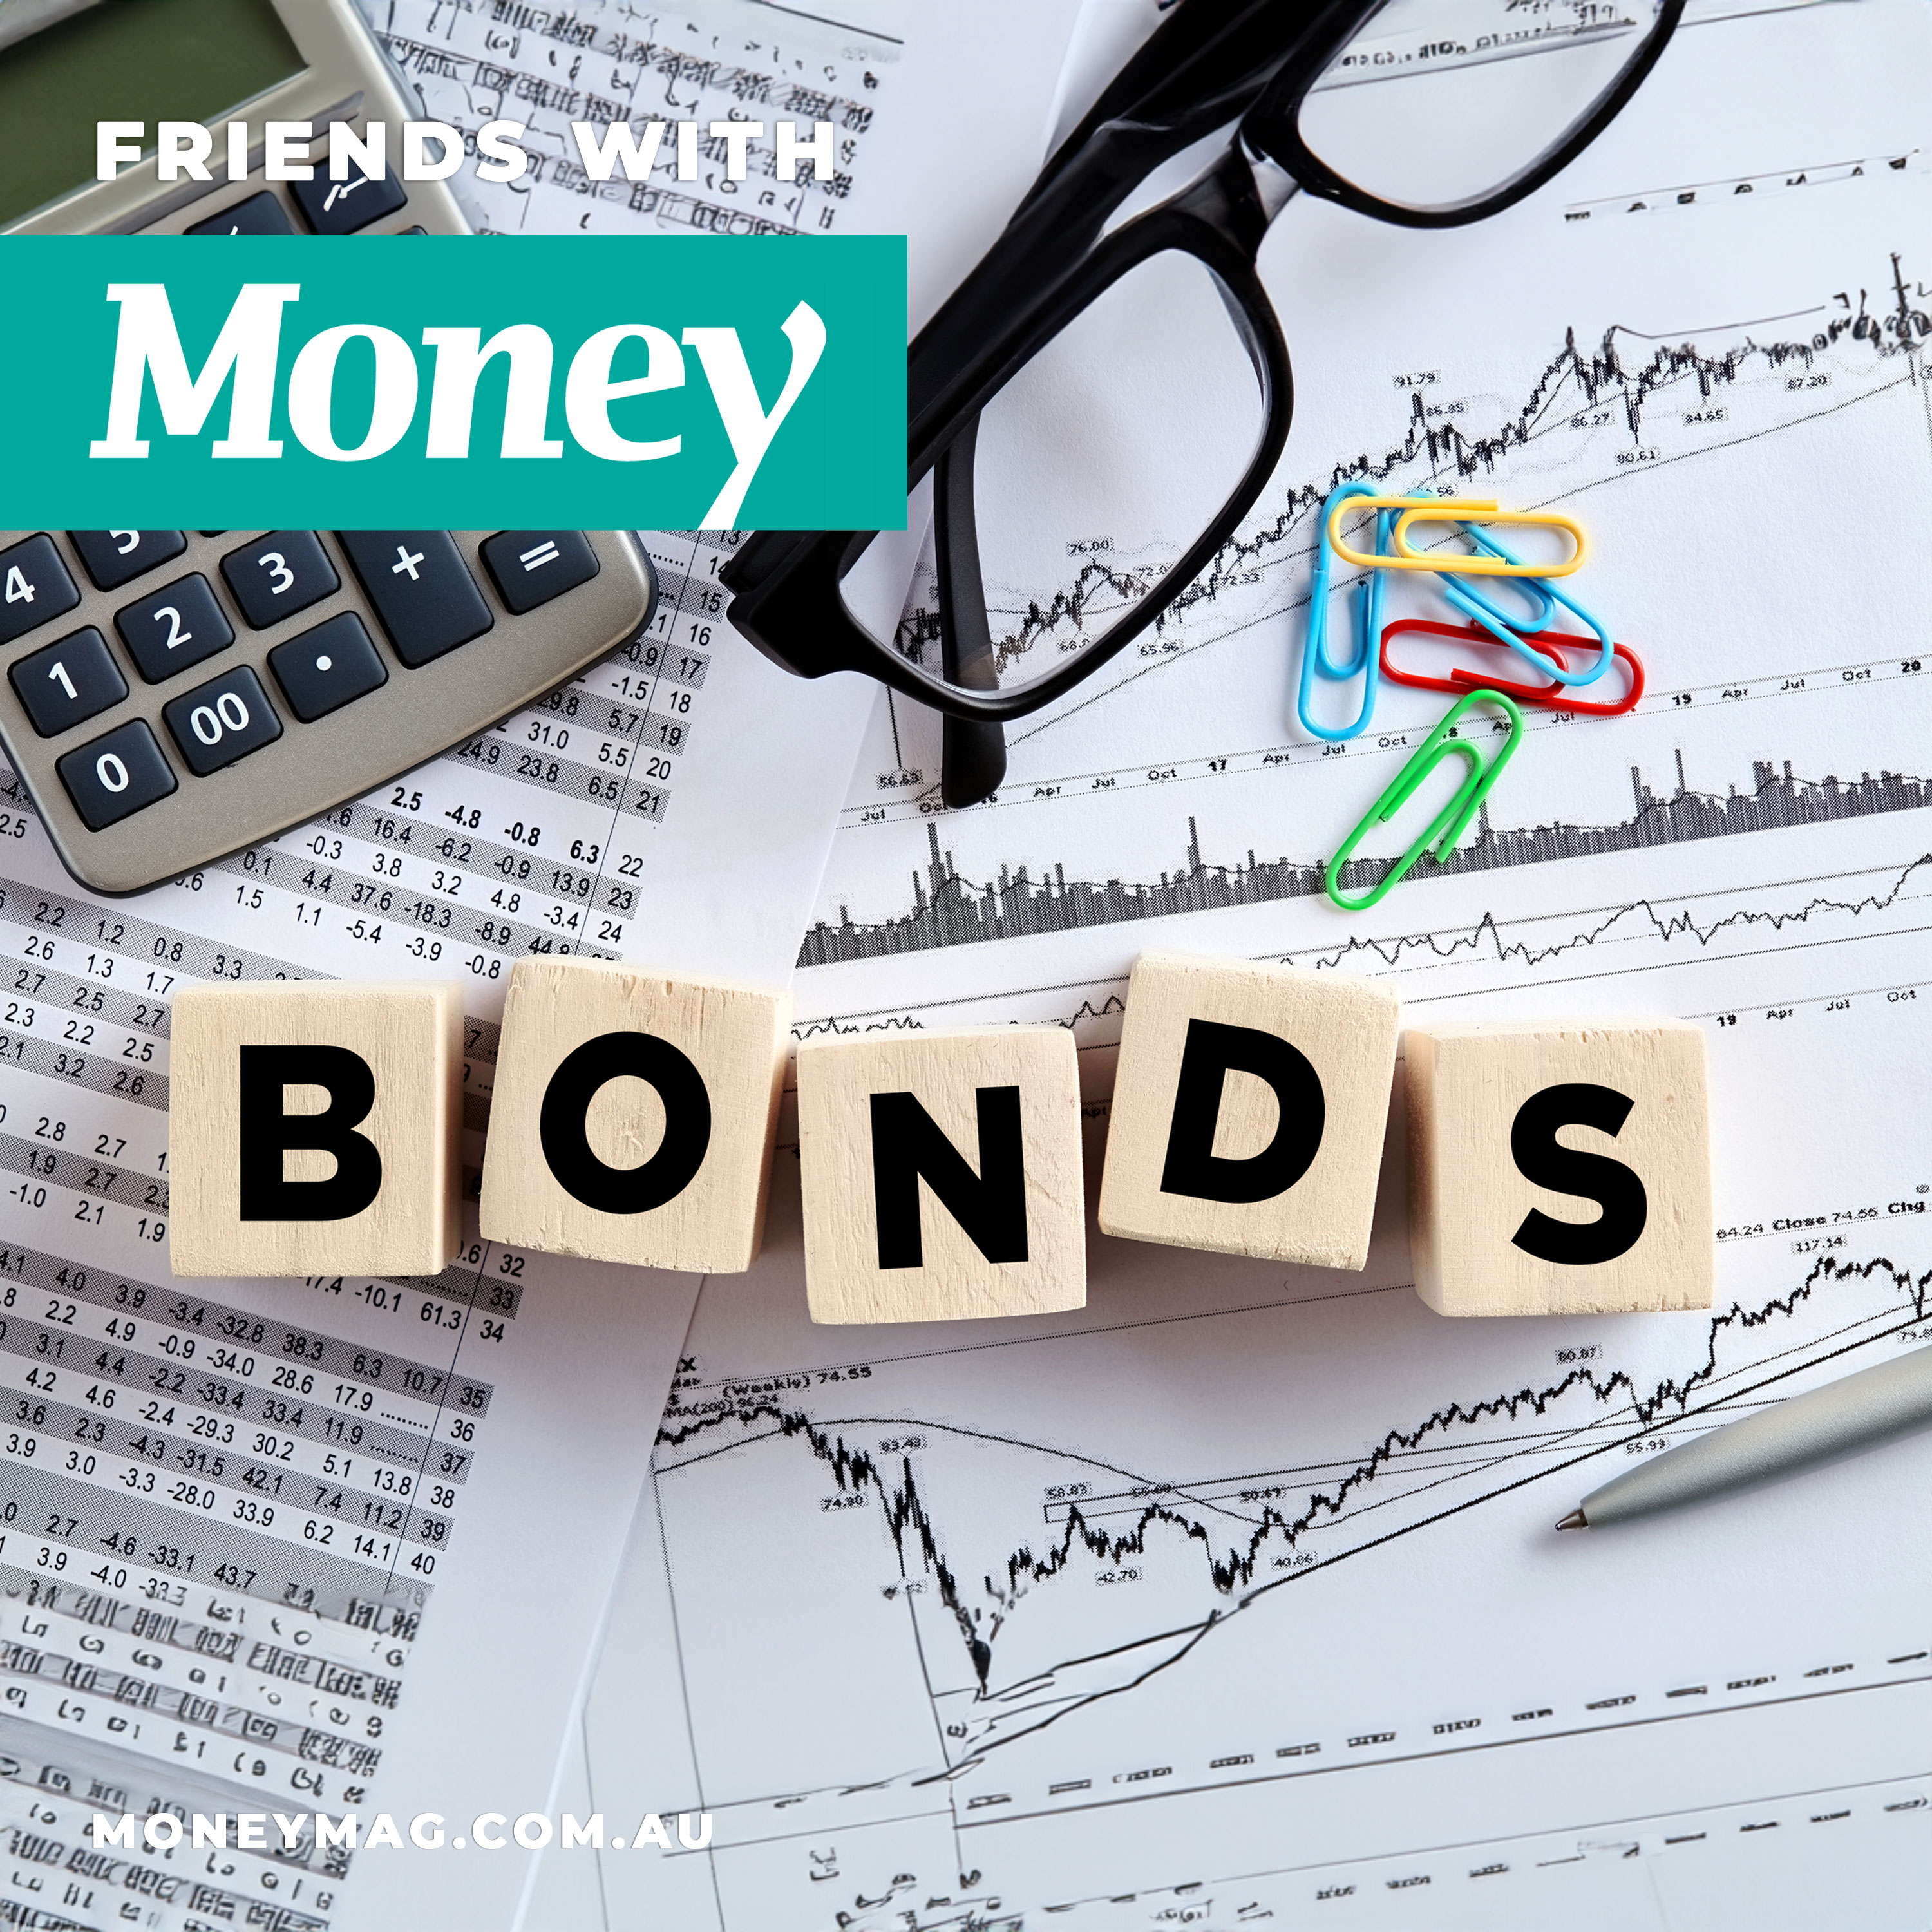 Bonds - the fixed income alternative